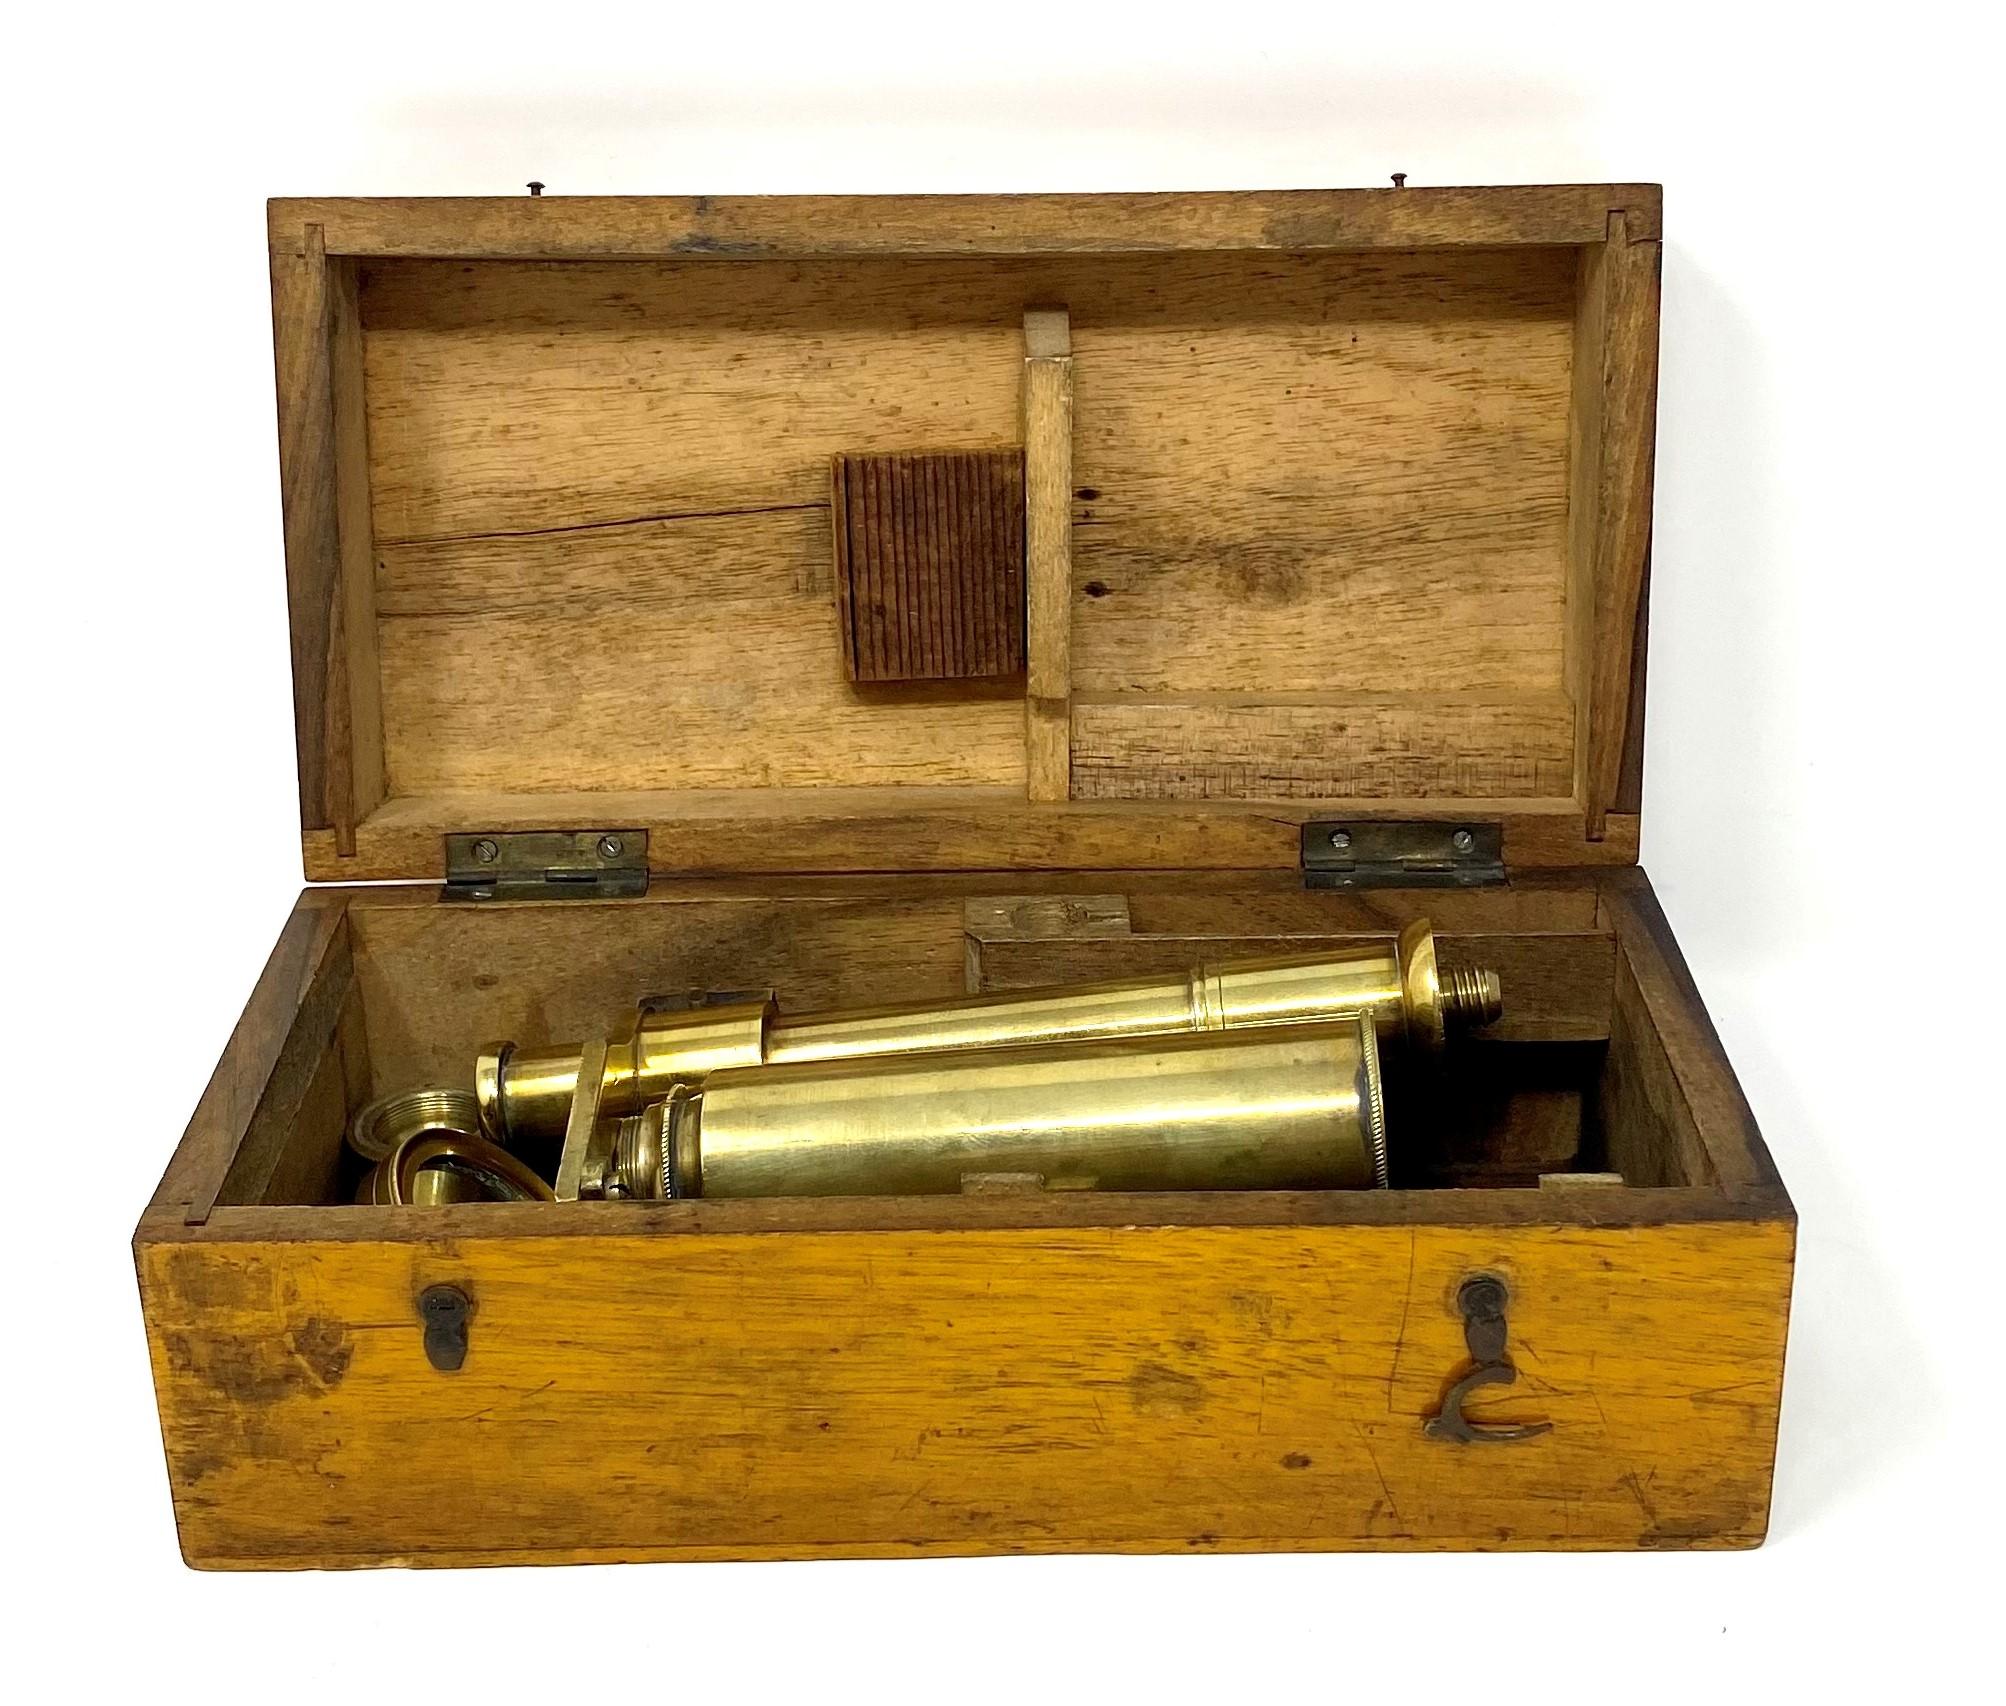 Rare antique English brass field microscope in original case, circa 1890-1900.